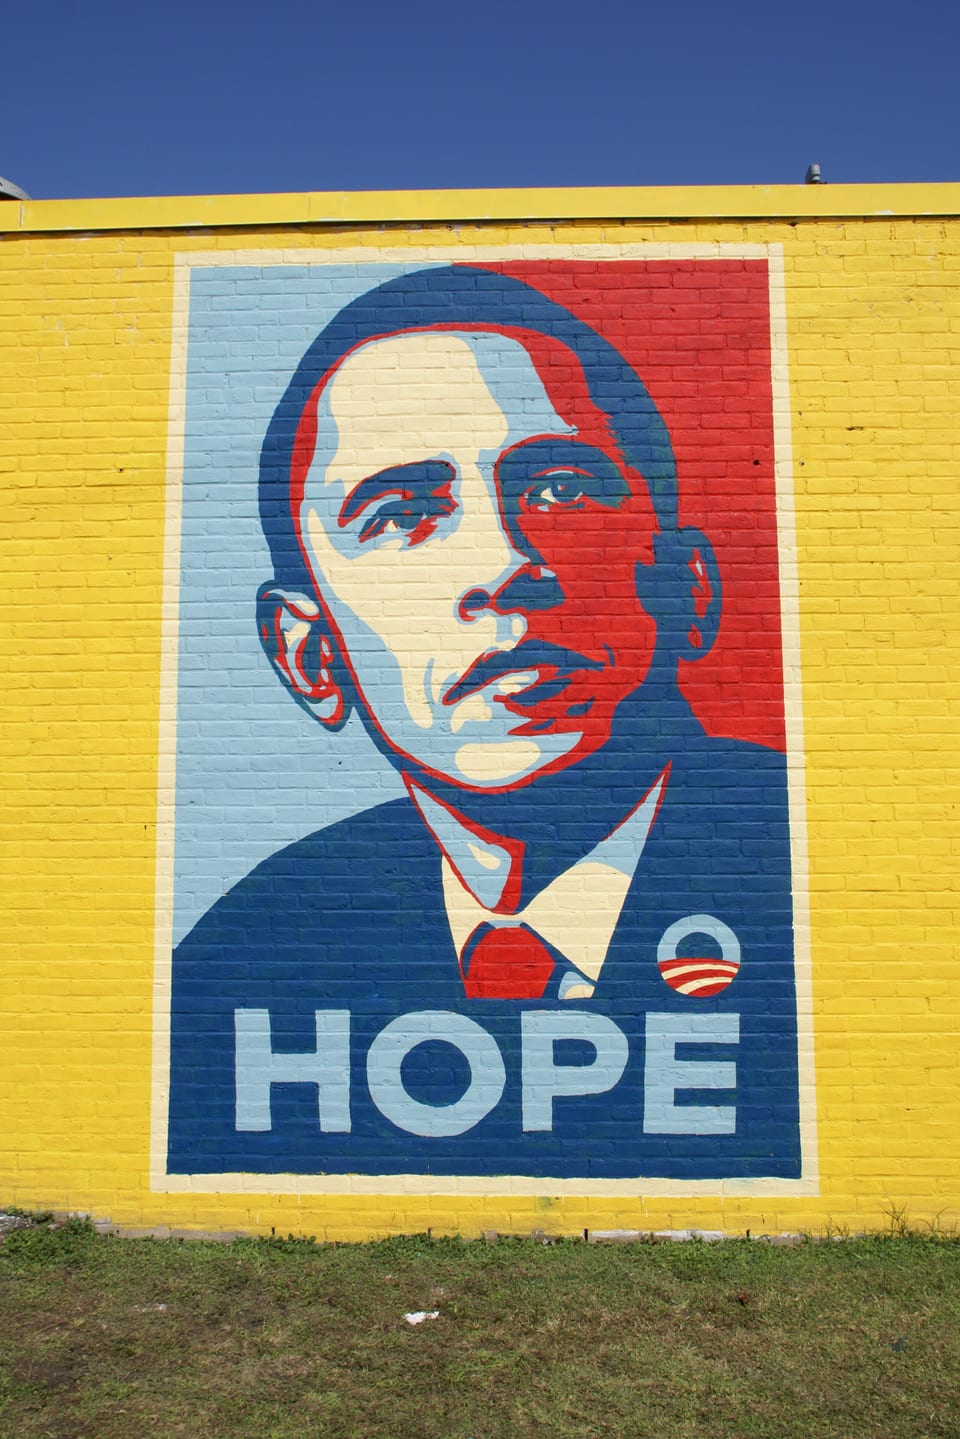 Das Porträt von Barack Obama, sehr bunt gemalt, darunter steht in Grossbuchstaben «Hope».